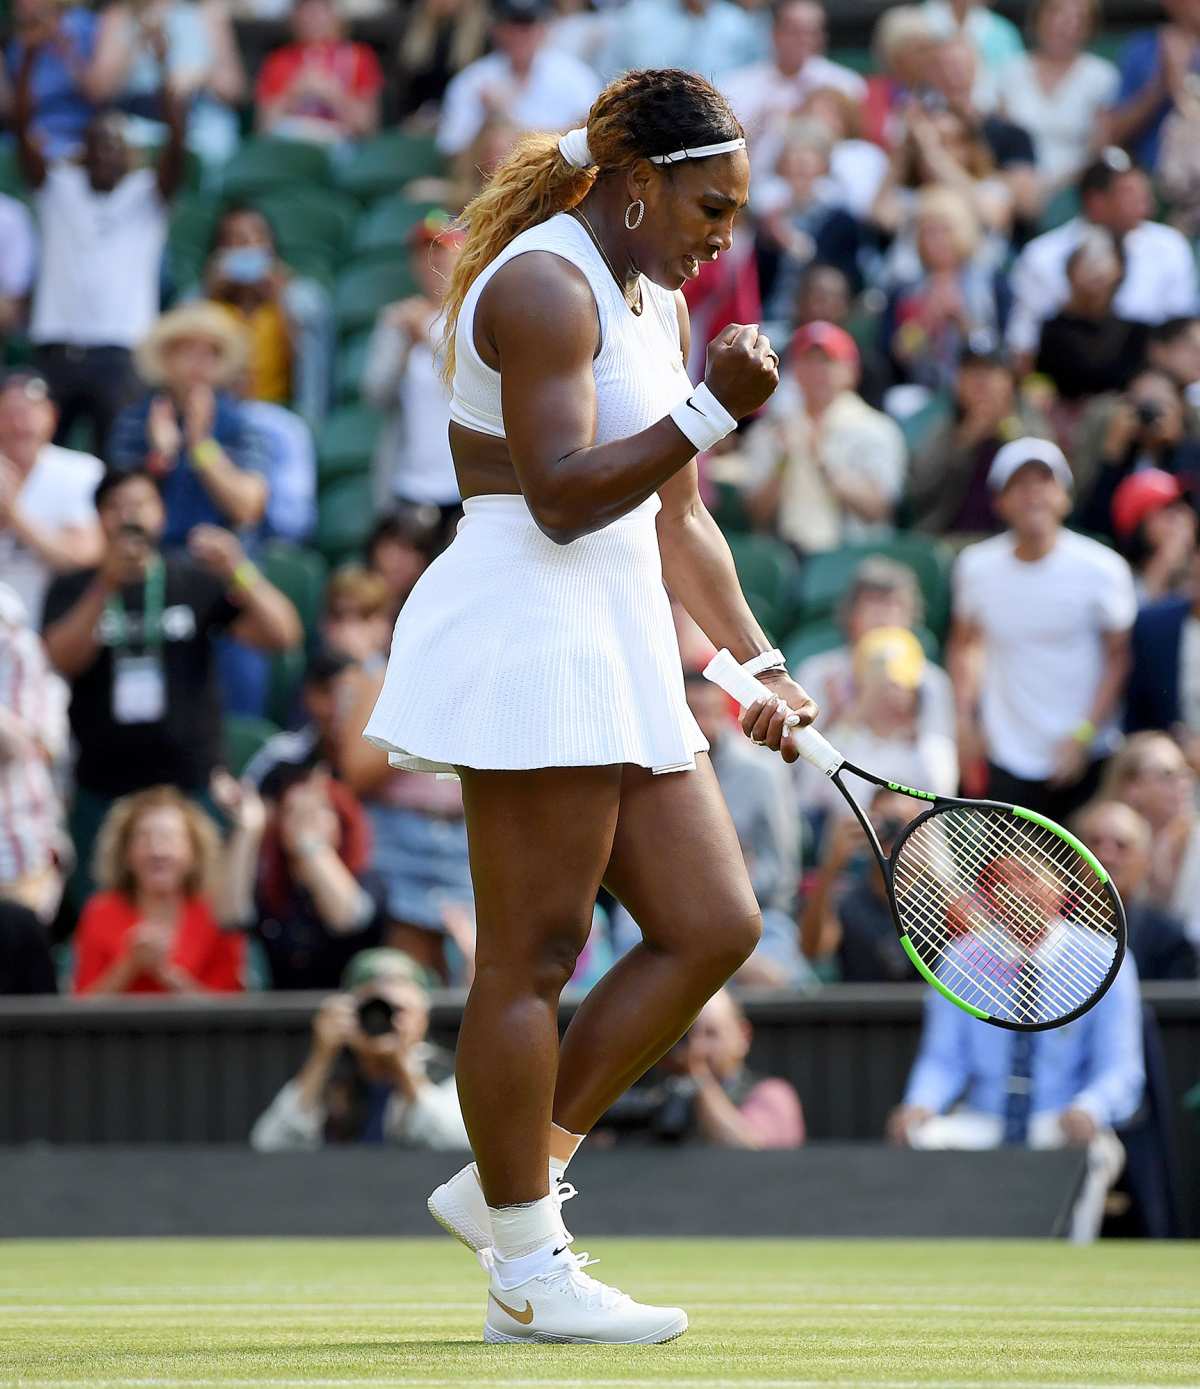 2019: Women's Tennis Winning Gear, Outfits